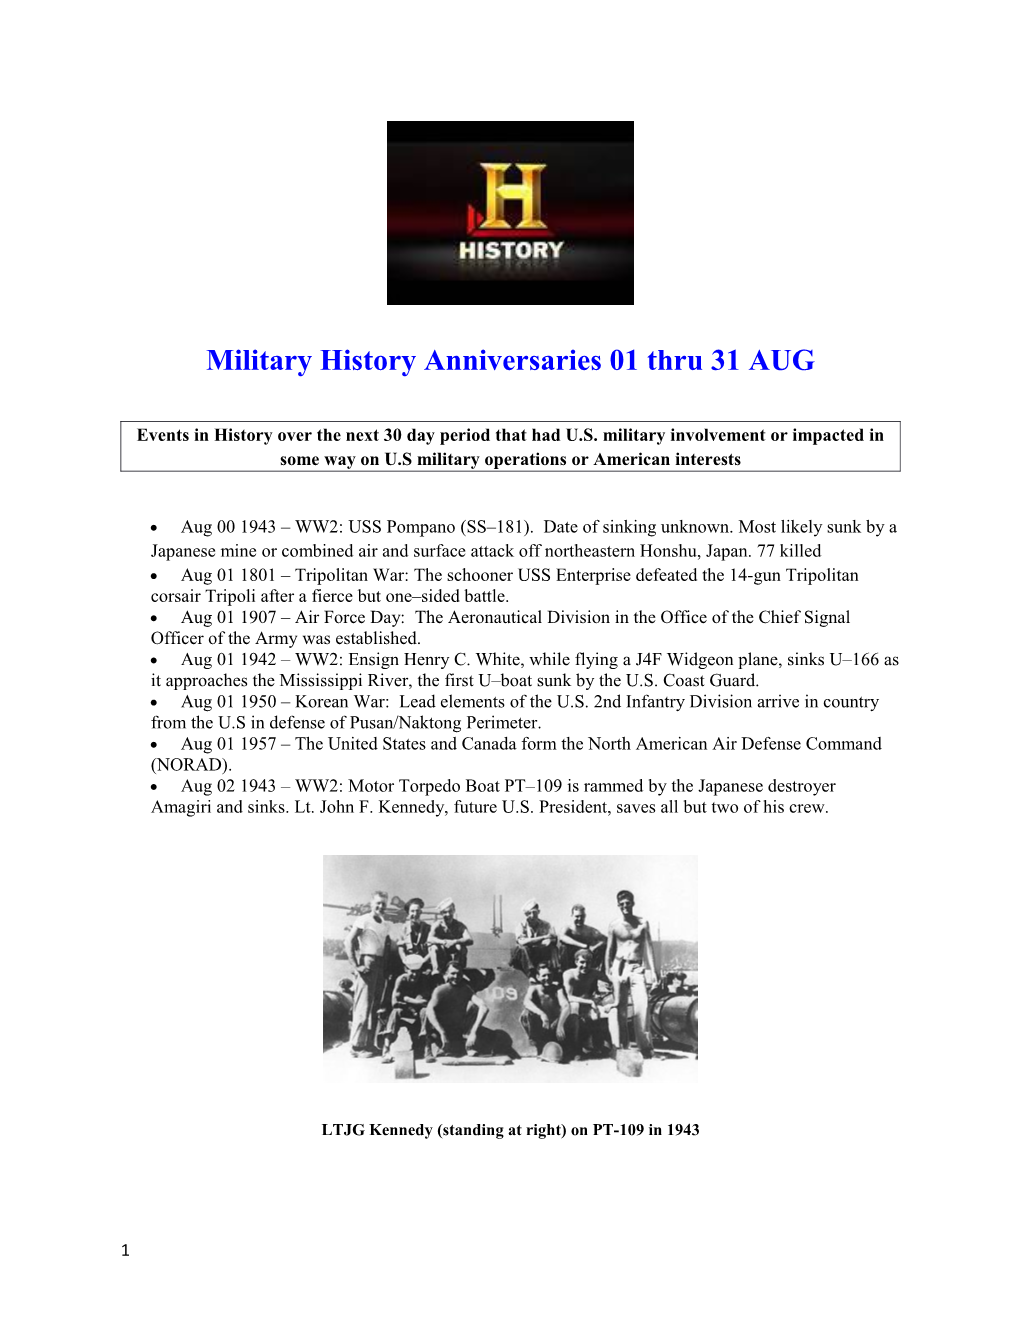 Military History Anniversaries01 Thru 31AUG